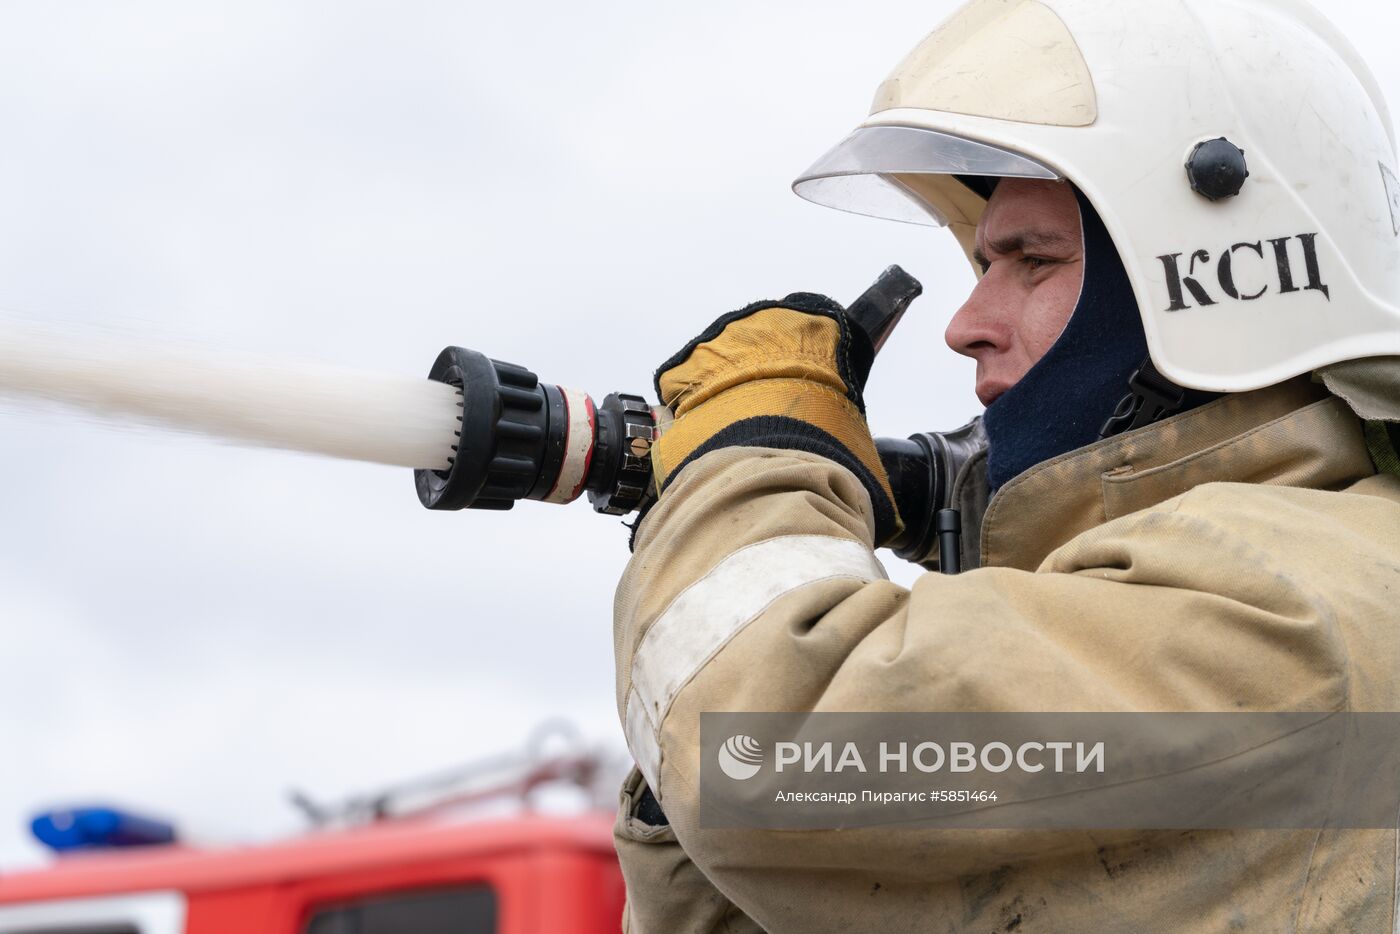 Противопожарные учения МЧС в регионах России